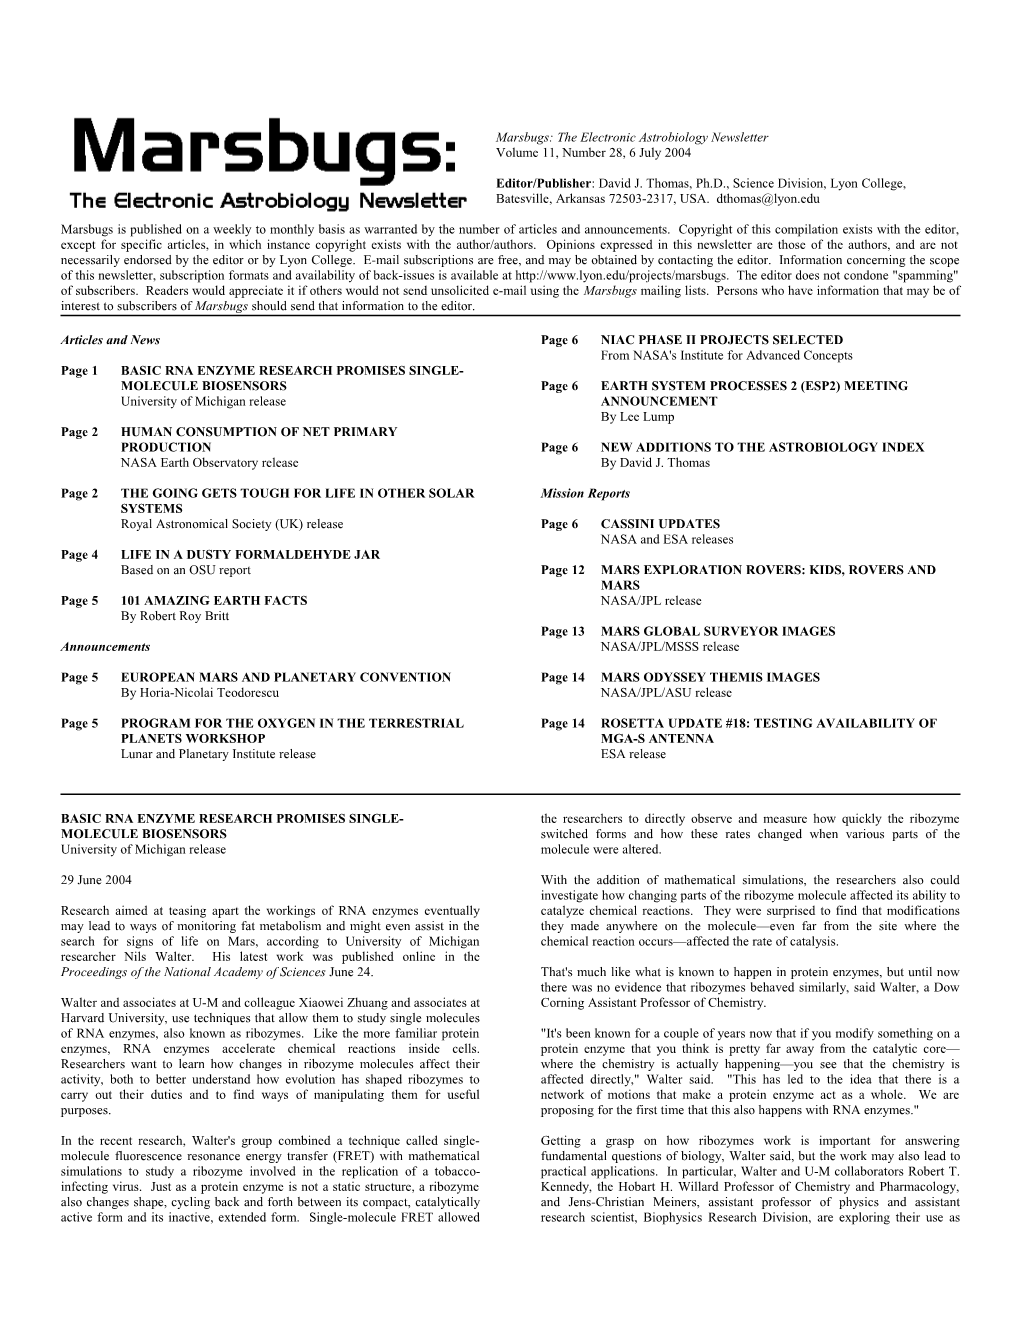 Marsbugs Vol. 11, No. 28